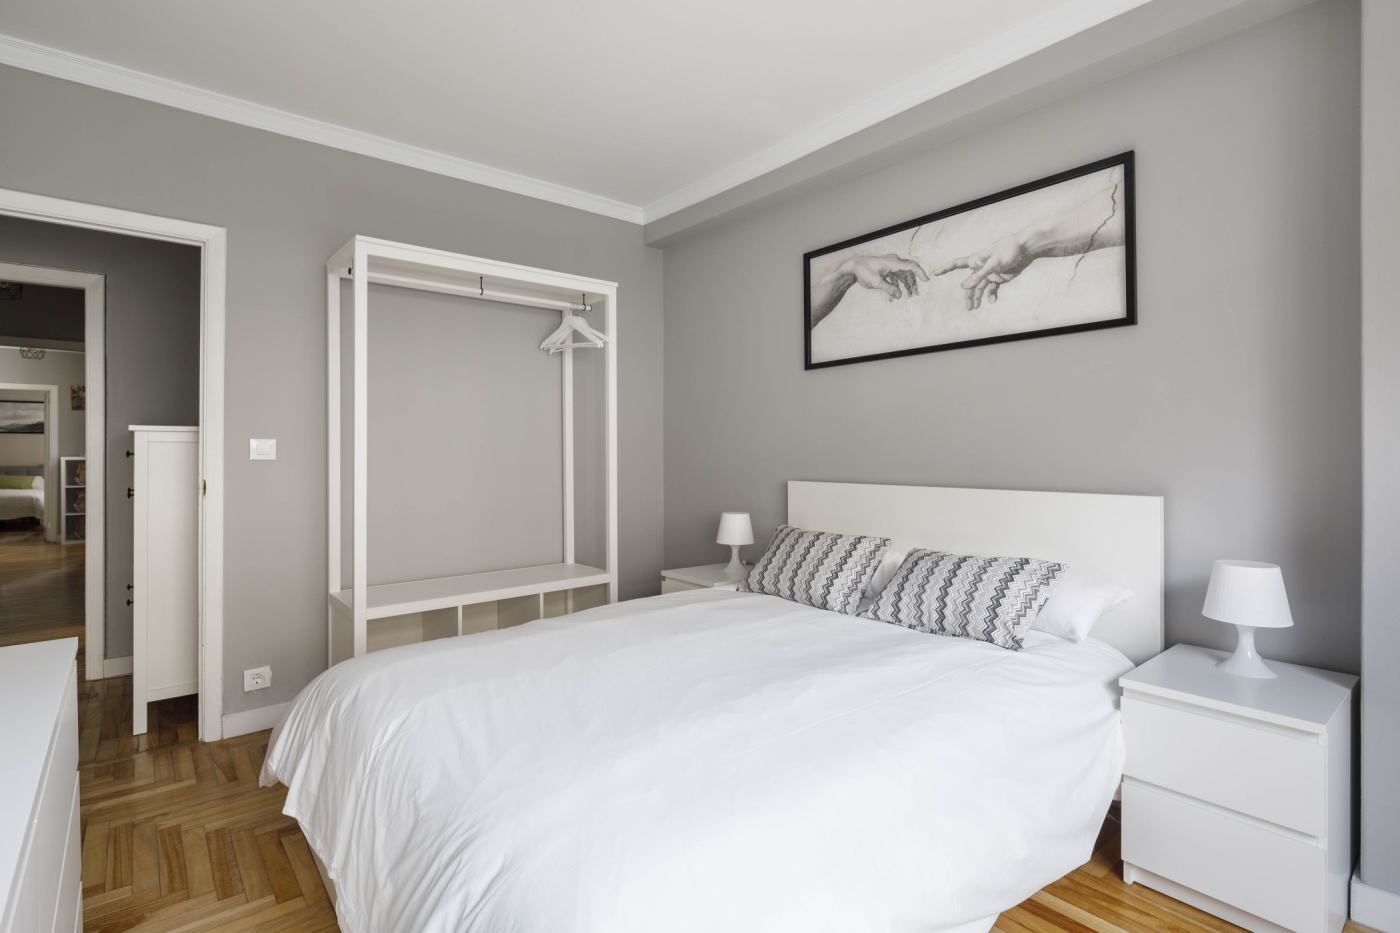 Rental unit in Vigo · ★New · 4 bedrooms · 5 beds · 1.5 baths in Vigo